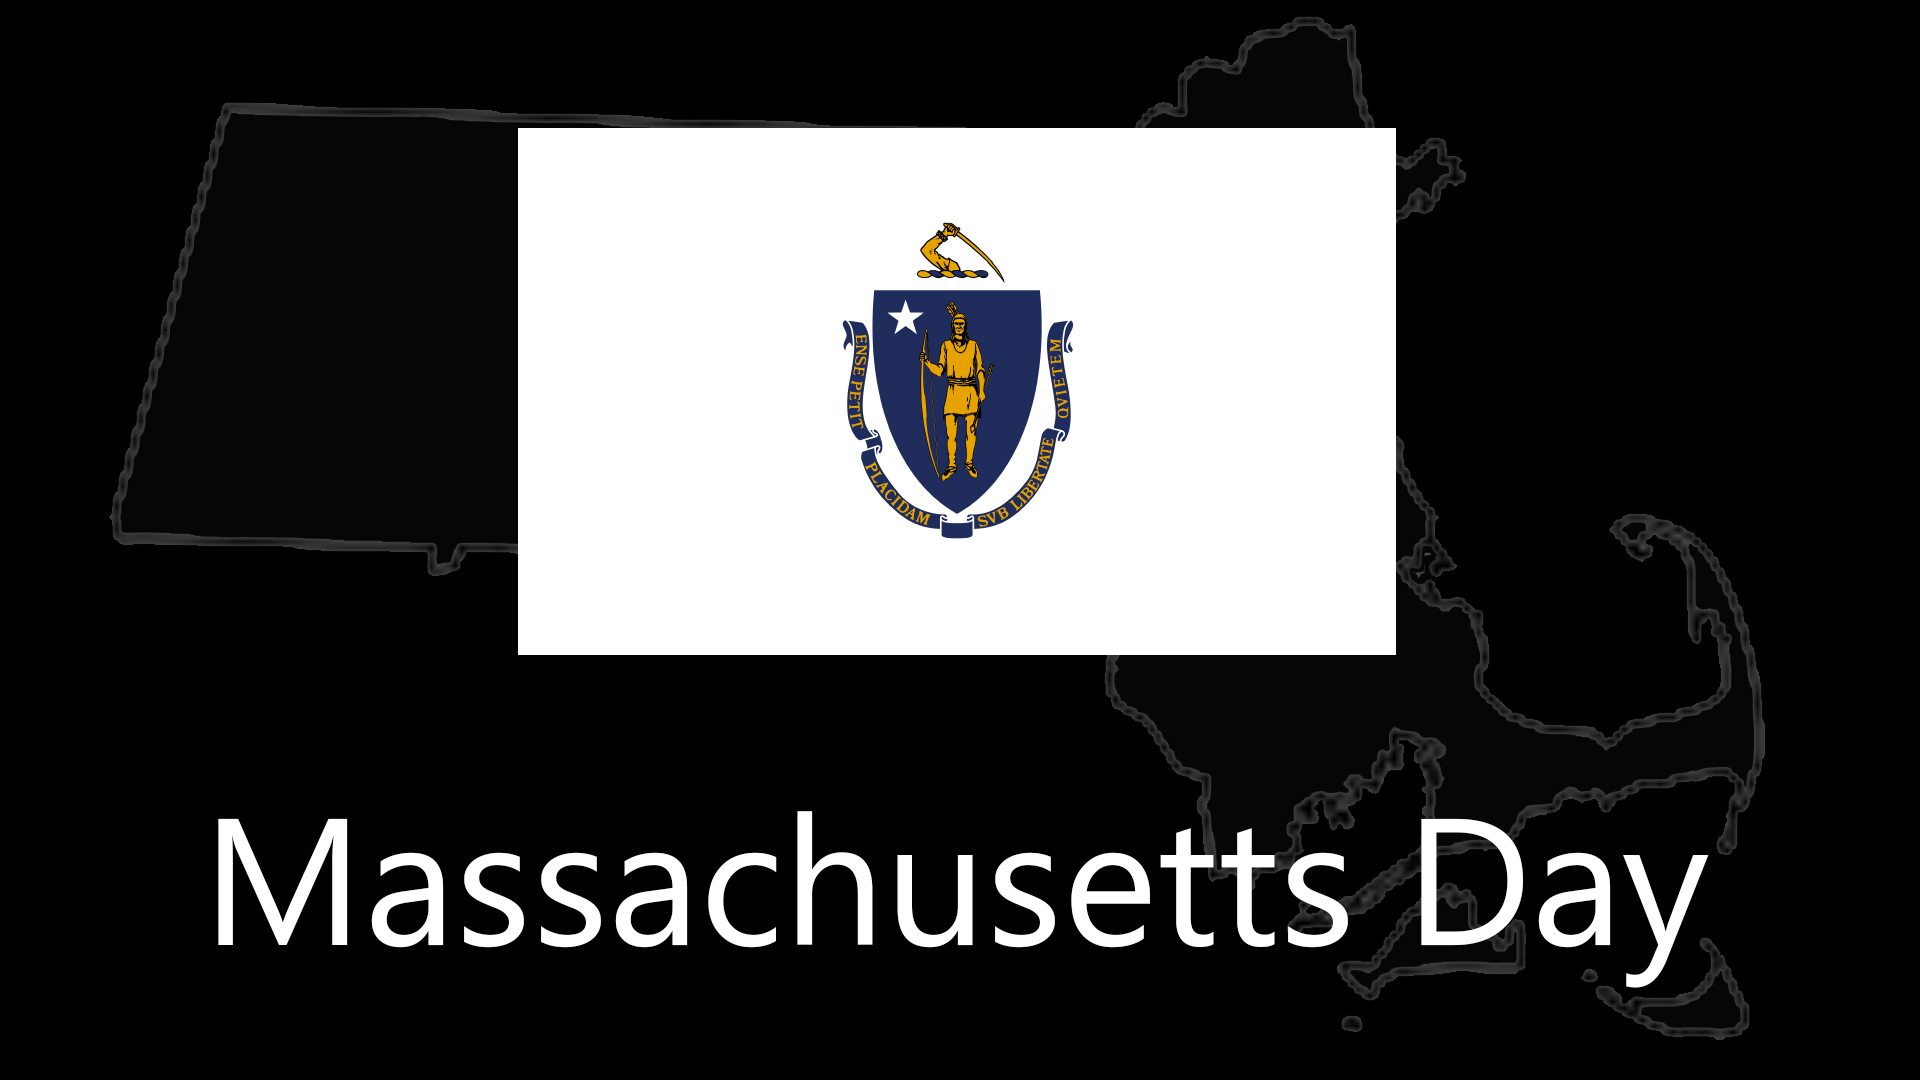 Massachusetts Day List Of National Days